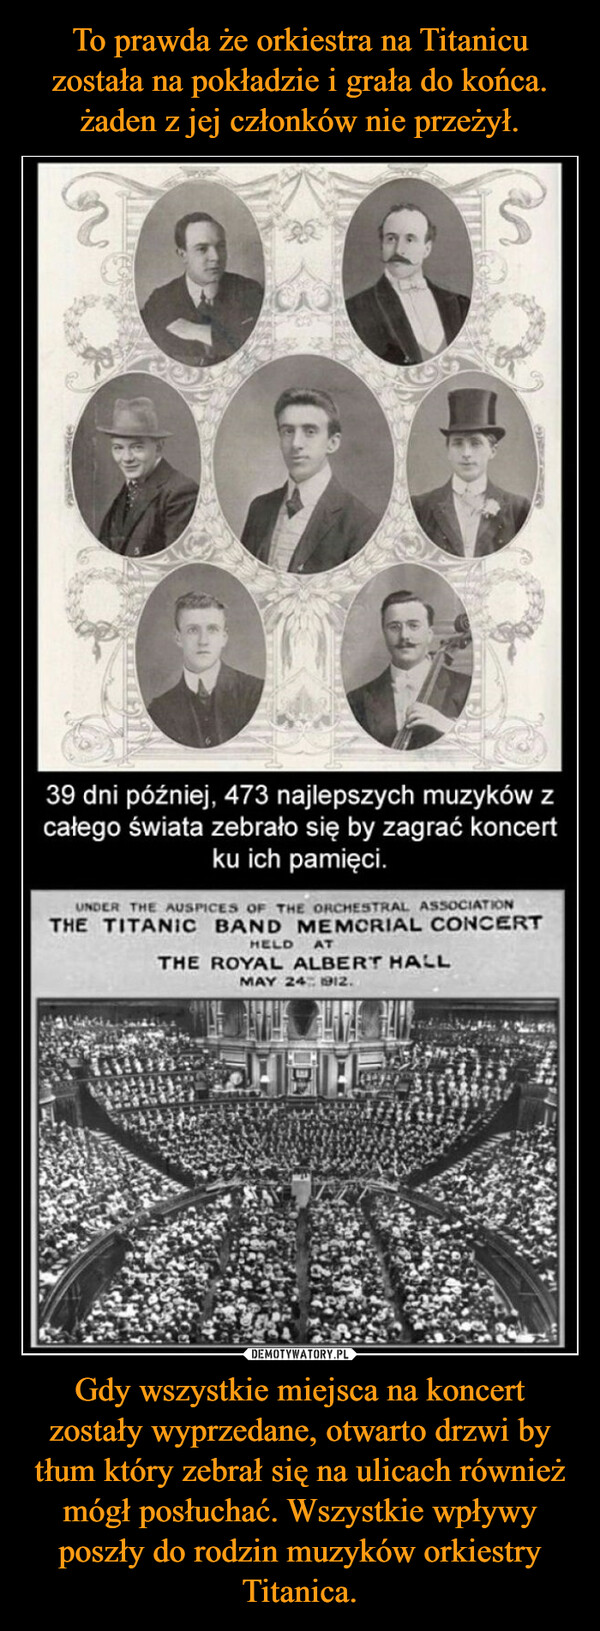 Gdy wszystkie miejsca na koncert zostały wyprzedane, otwarto drzwi by tłum który zebrał się na ulicach również mógł posłuchać. Wszystkie wpływy poszły do rodzin muzyków orkiestry Titanica. –  